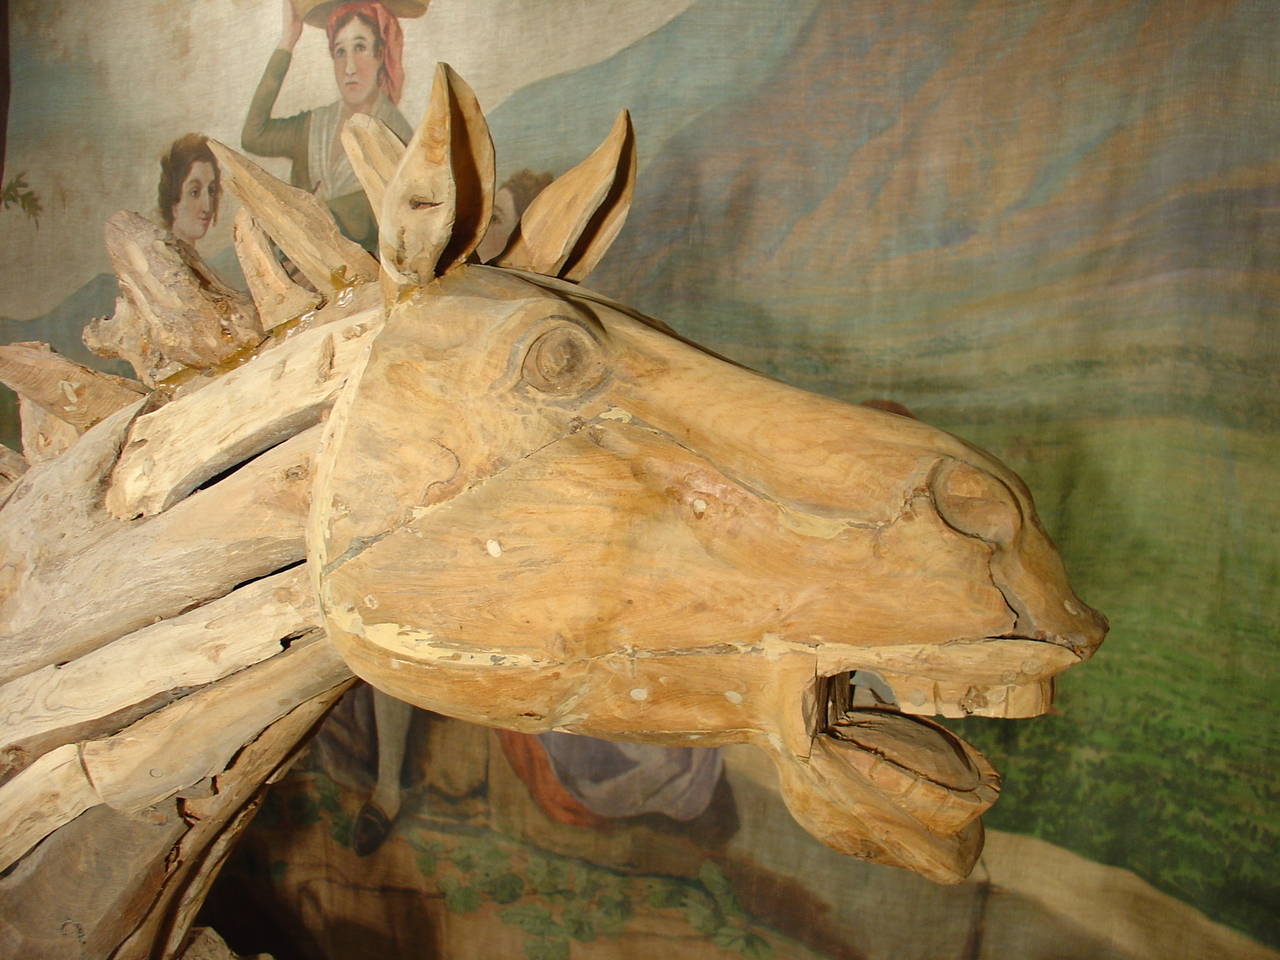 Bois flotté Sculpture de tête de cheval en bois flotté de France